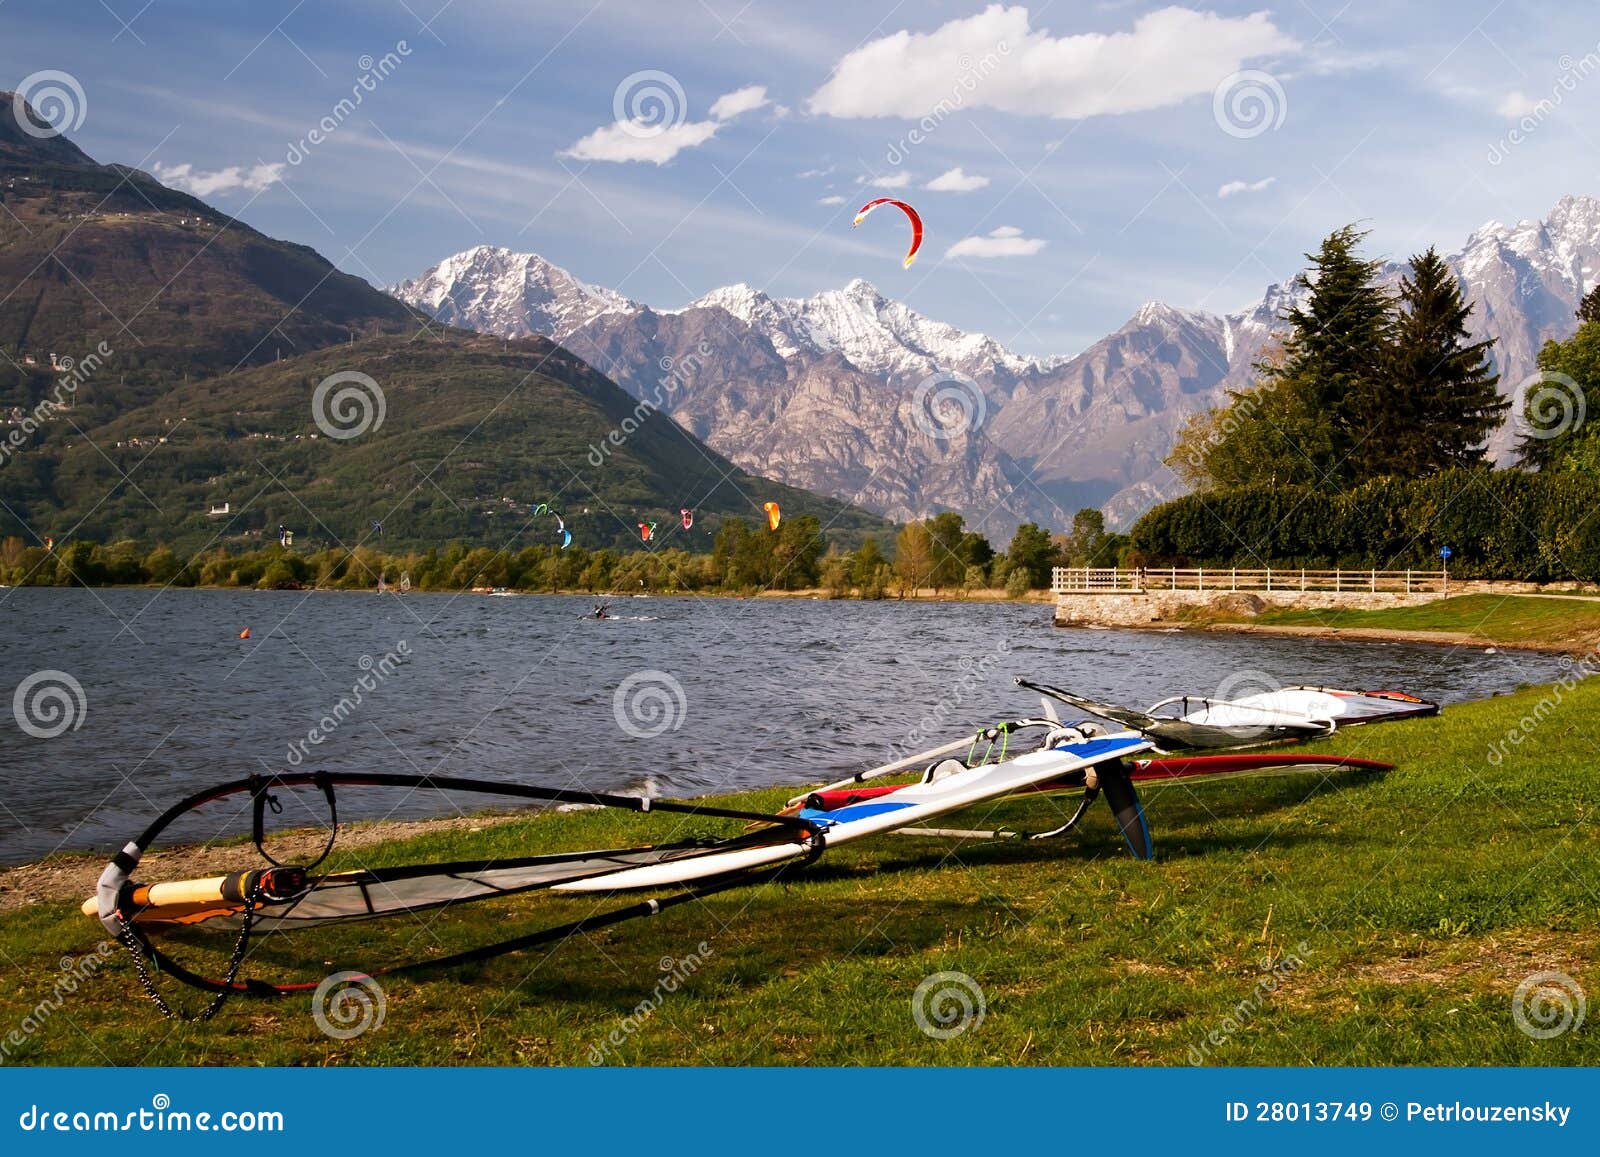 windsurf on the shore of lago di como in italy